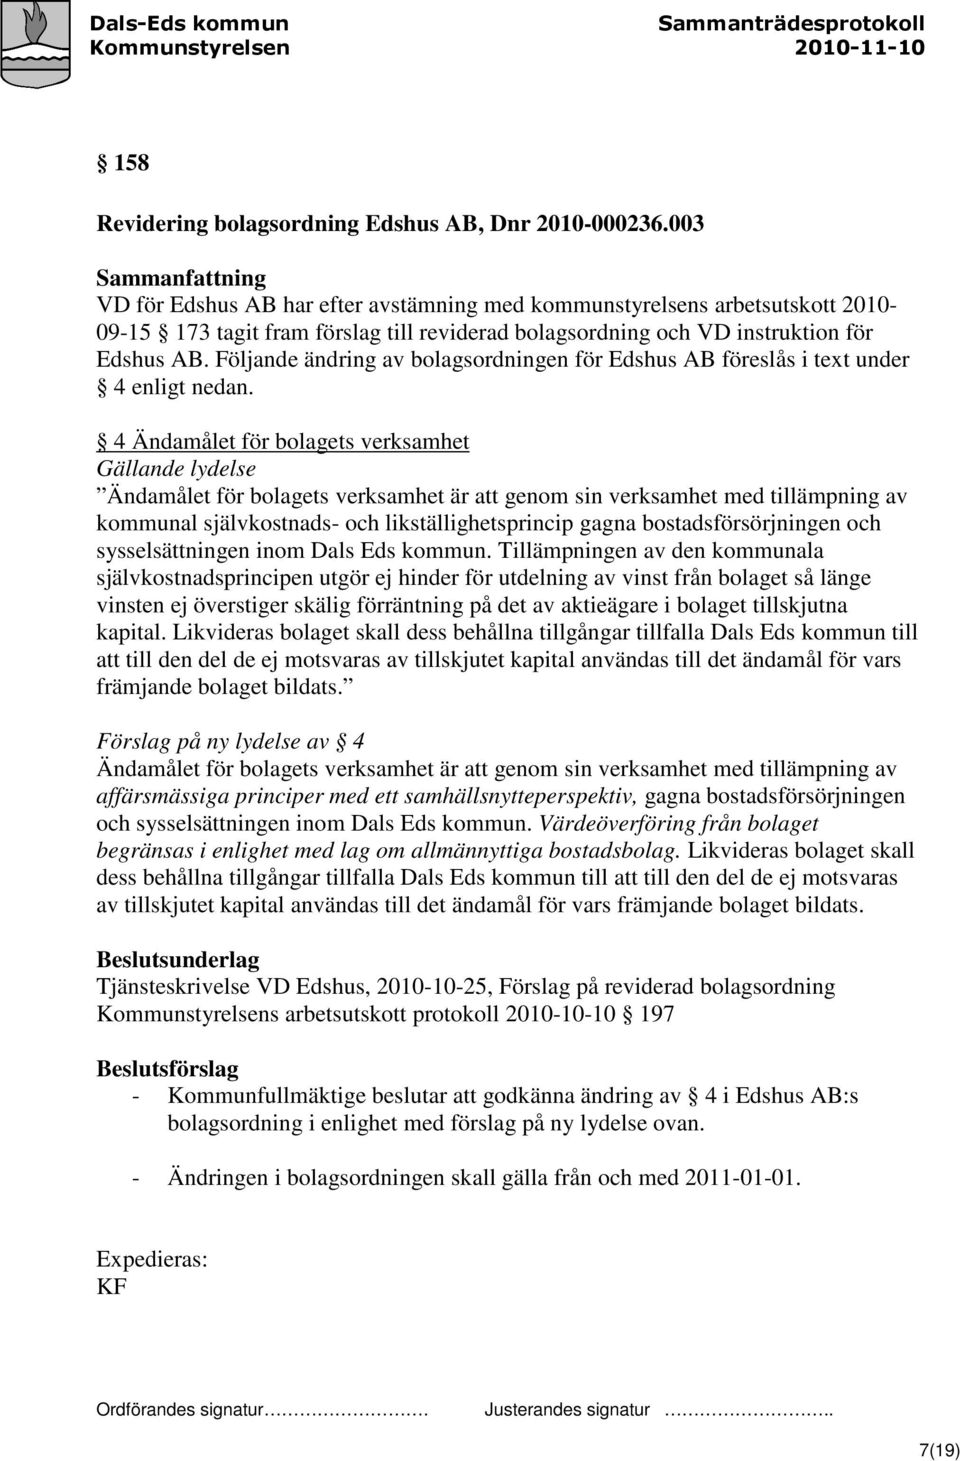 Följande ändring av bolagsordningen för Edshus AB föreslås i text under 4 enligt nedan.